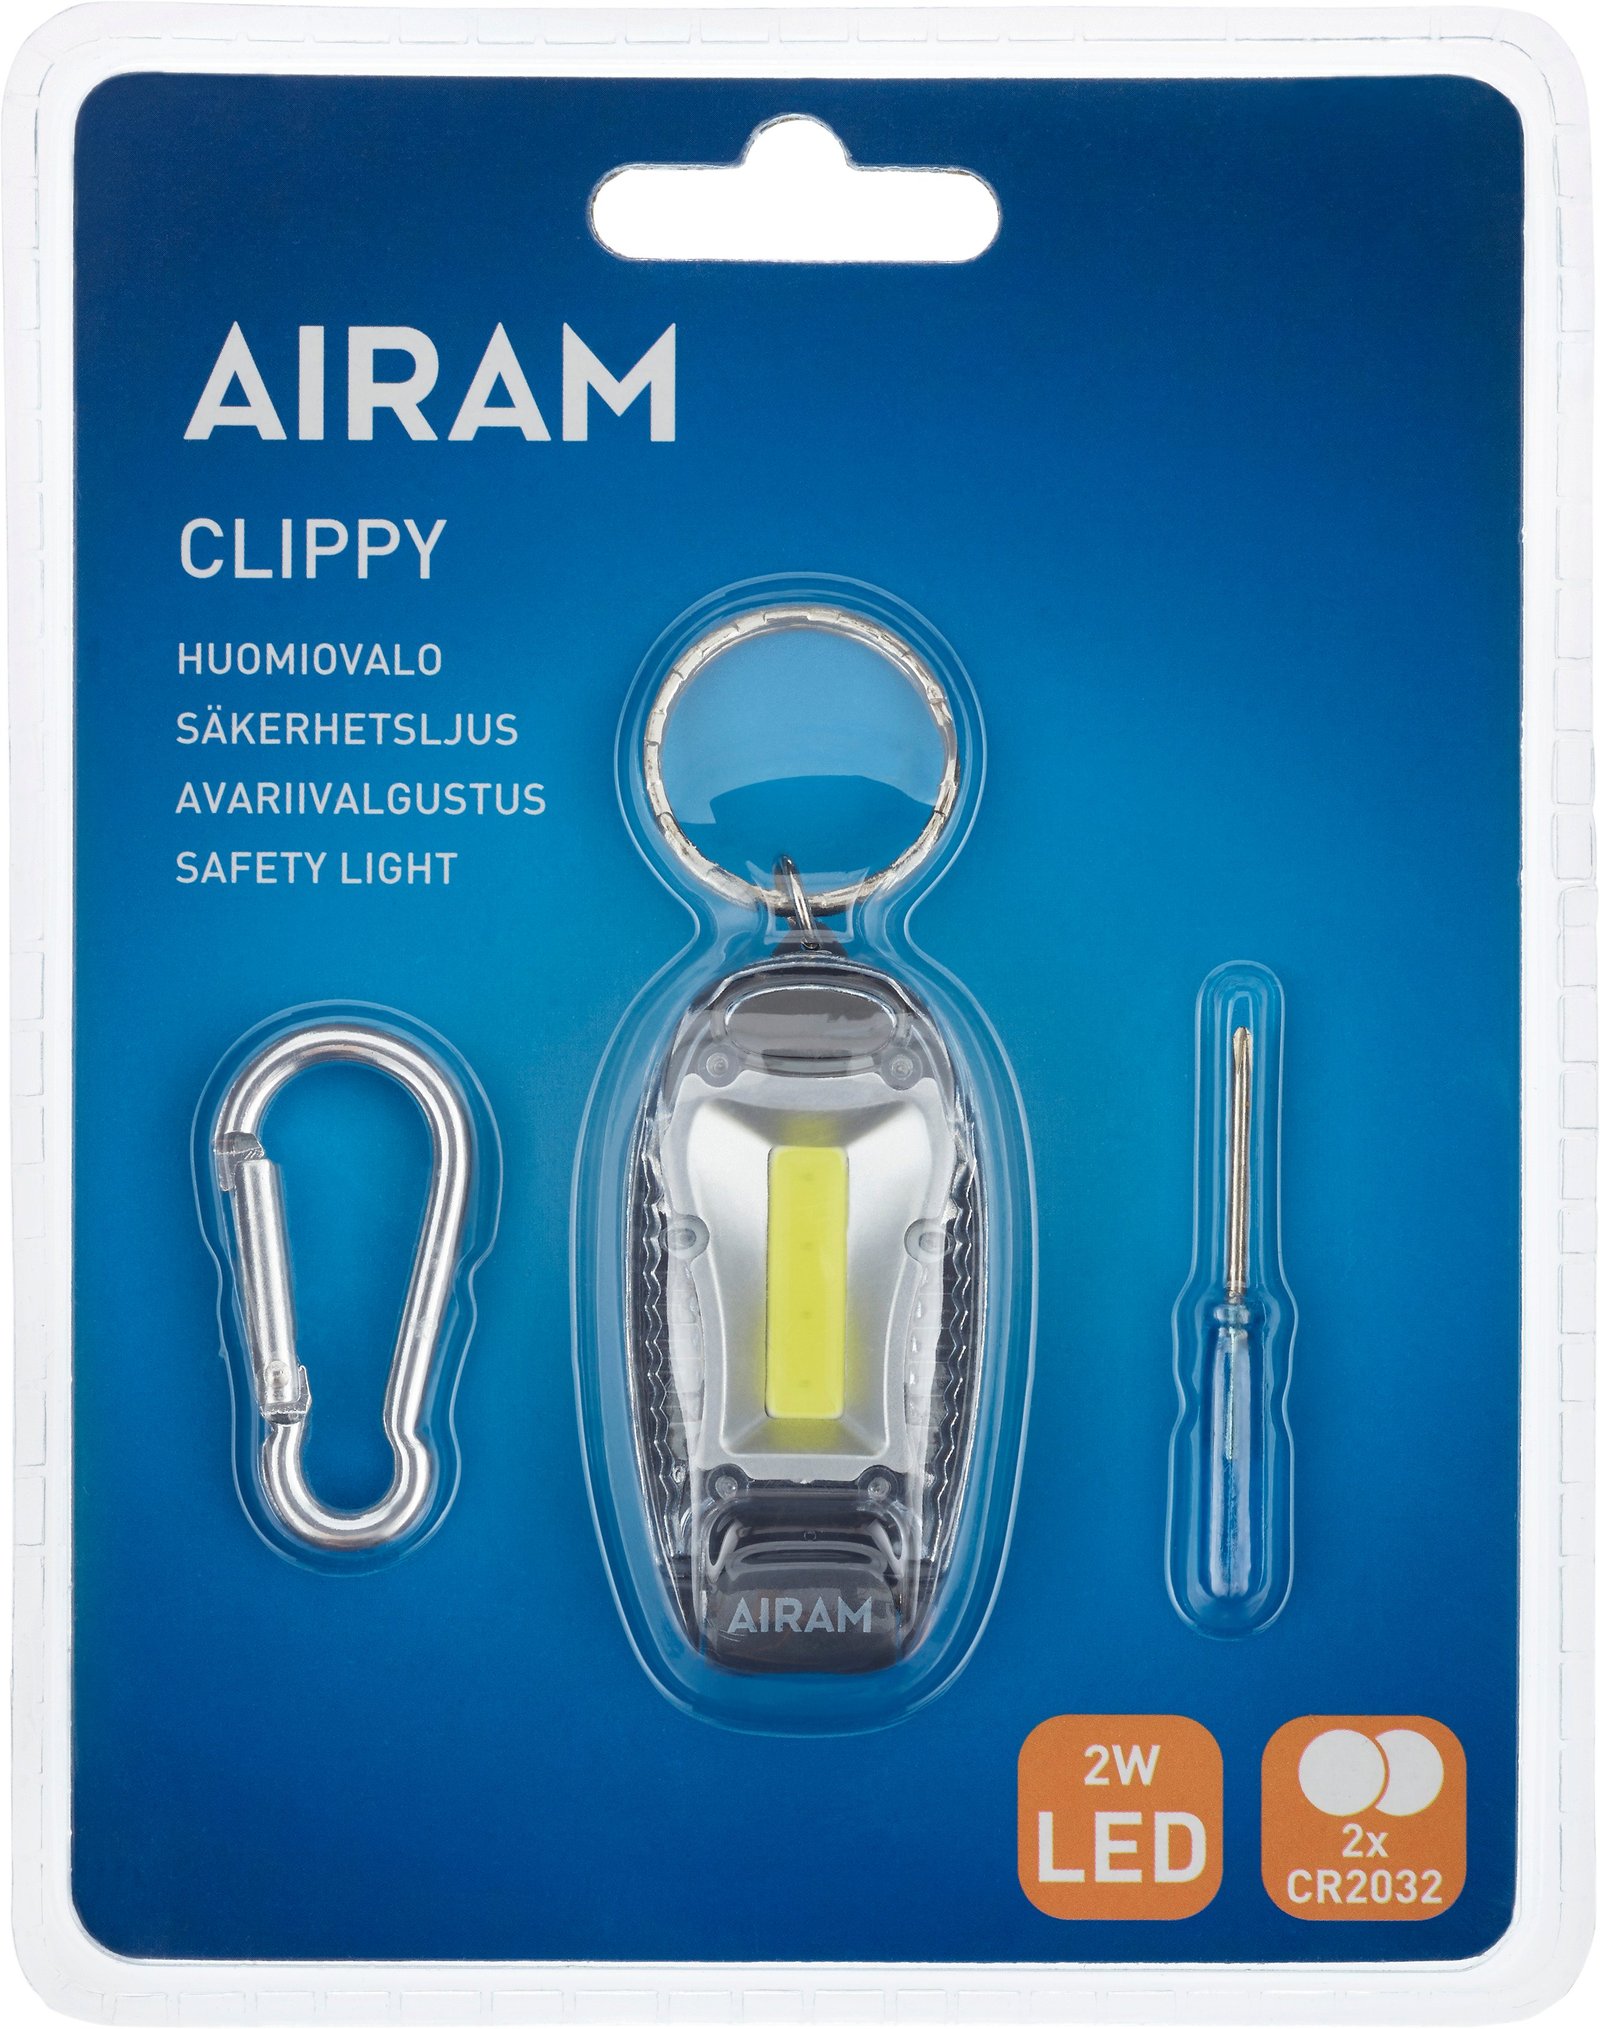 Airam Clippy Säkerhetsljus 1 st